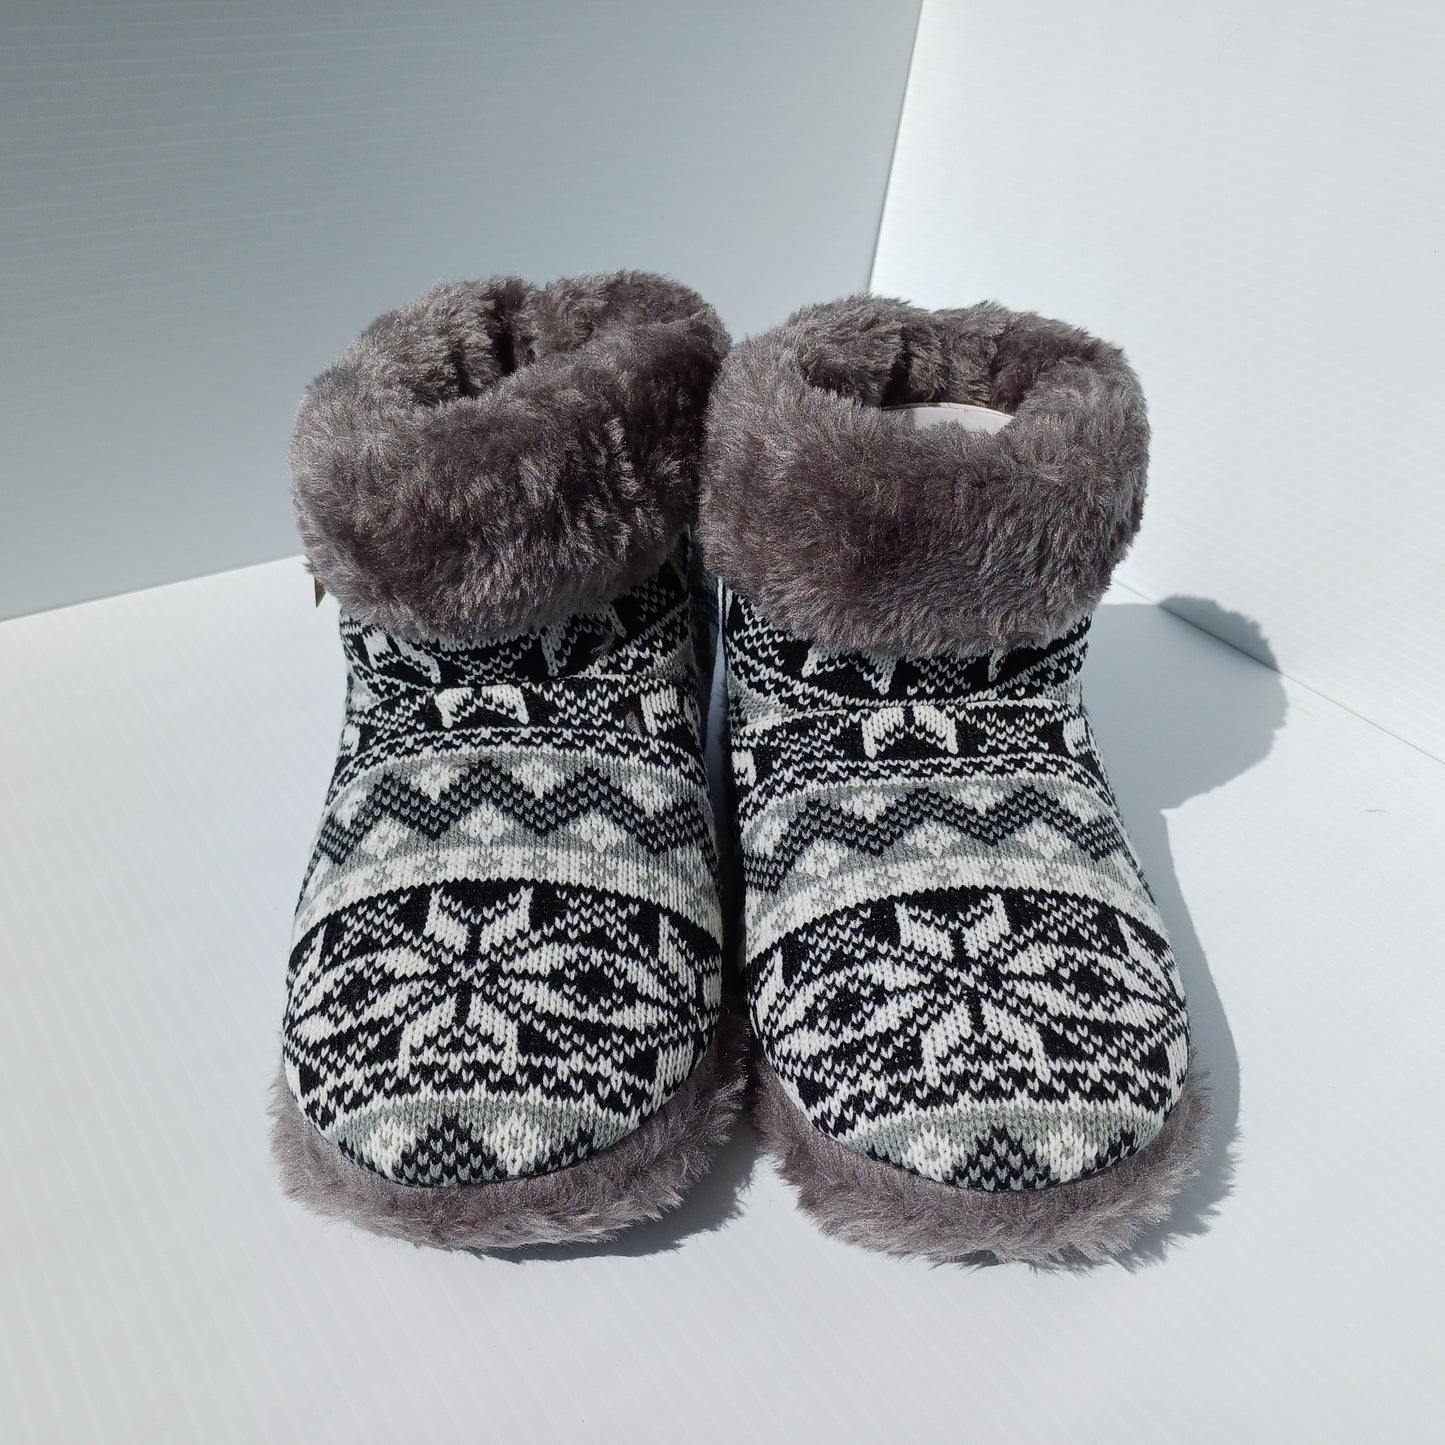 Cozy slippers